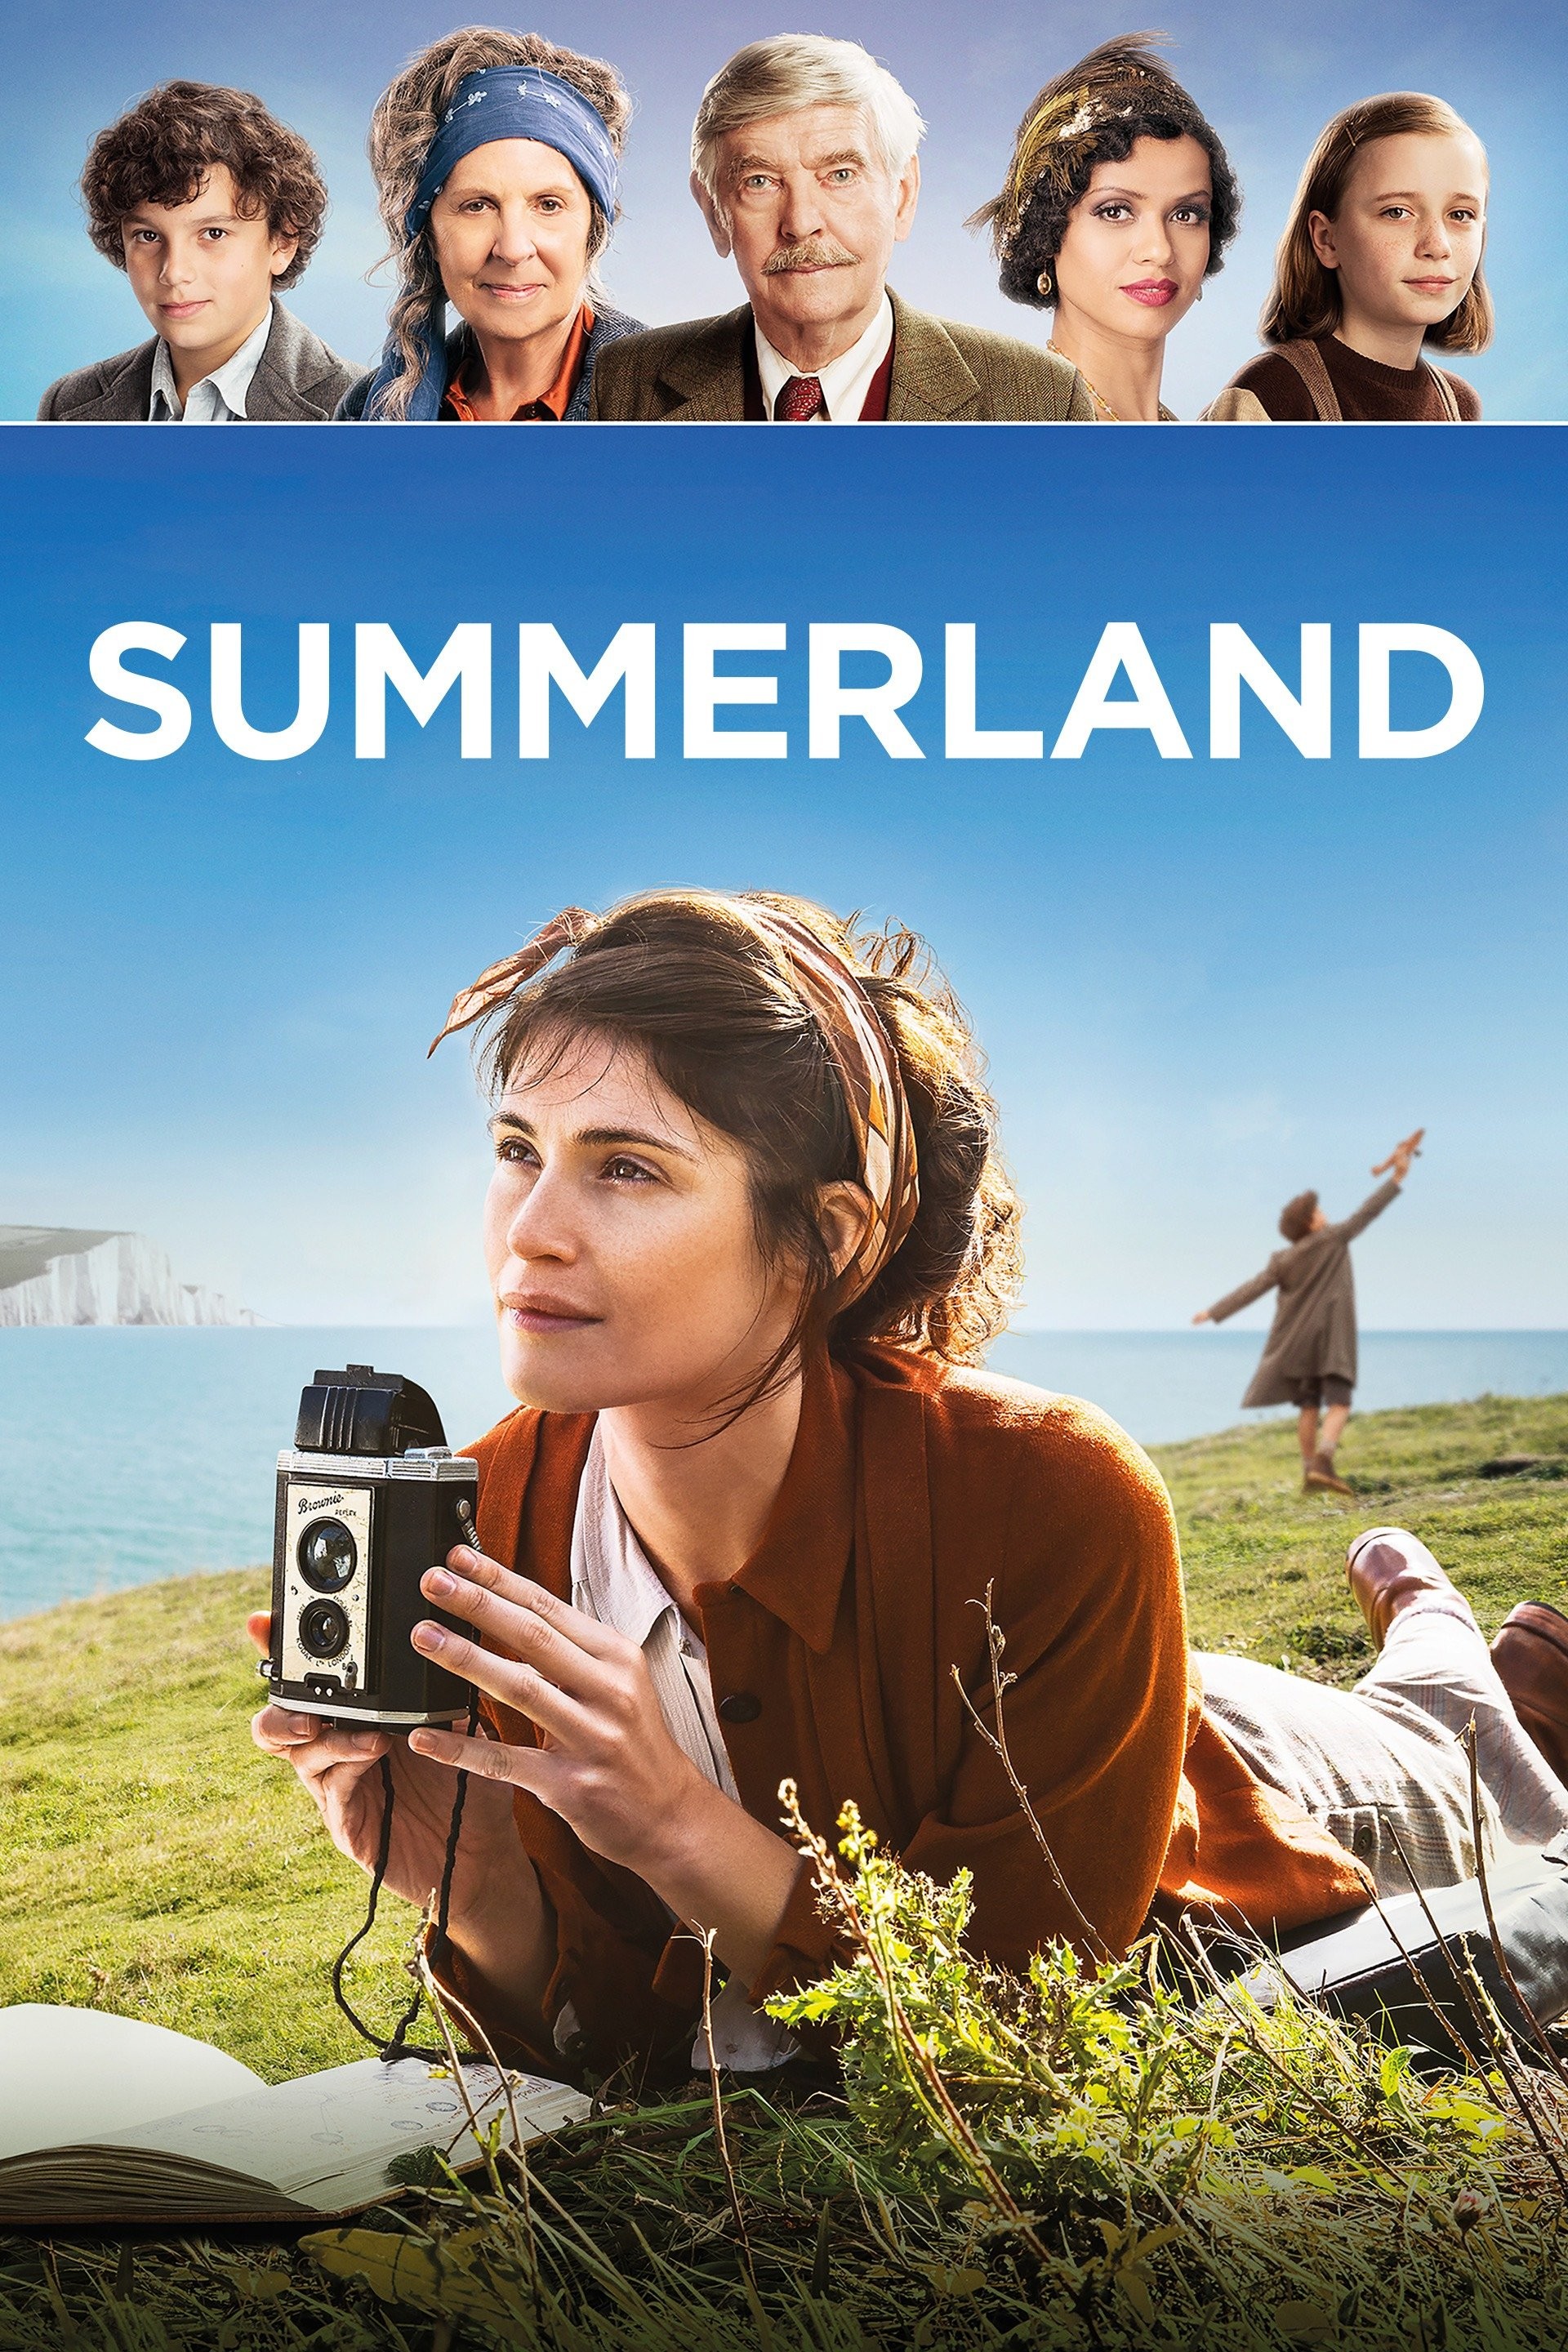 Summertime (2020) - IMDb